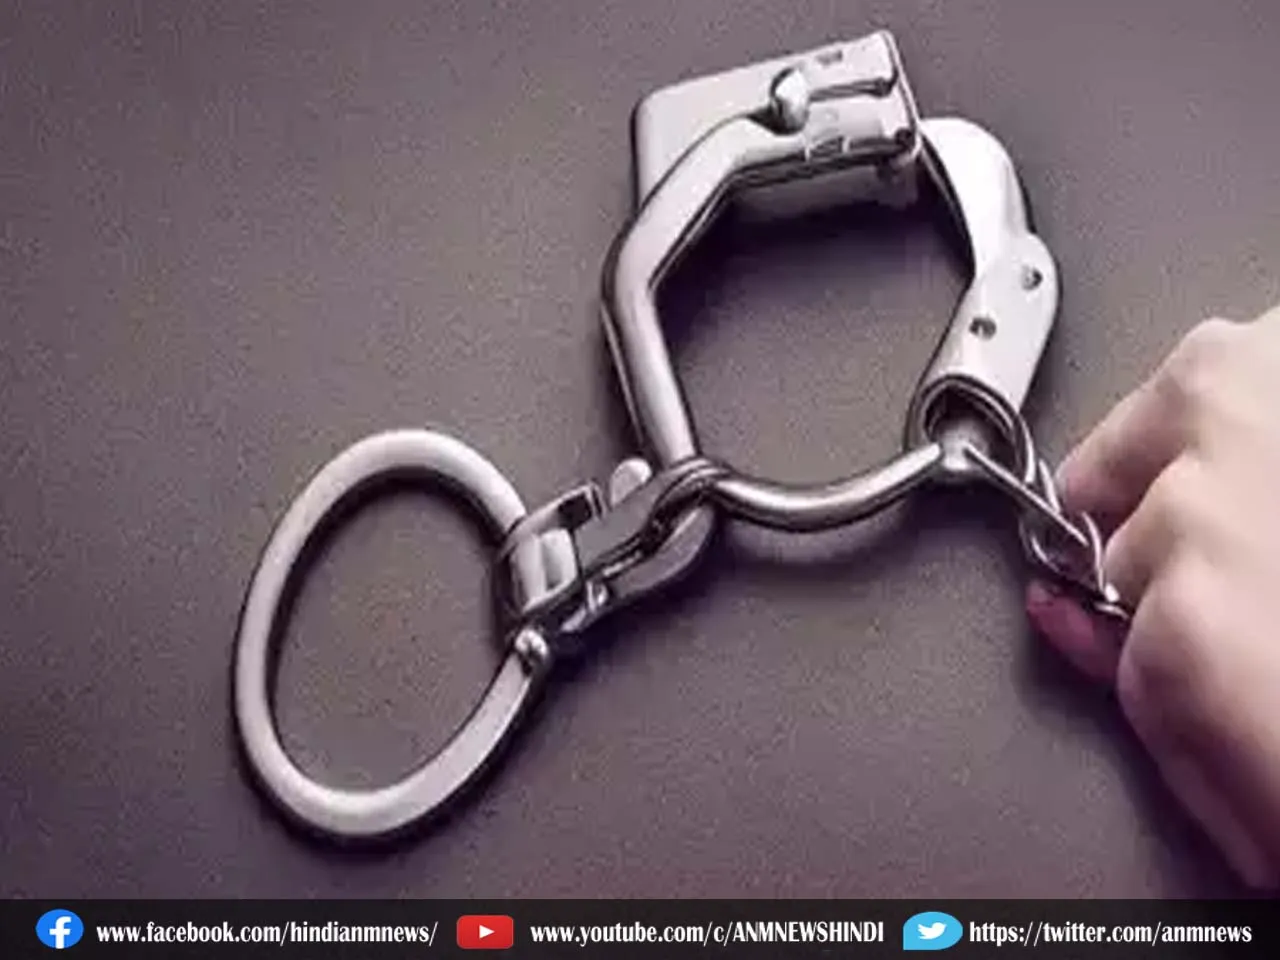 Crime : नक्सलियों की मदद करने के आरोप में महिला हुआ गिरफ्तार